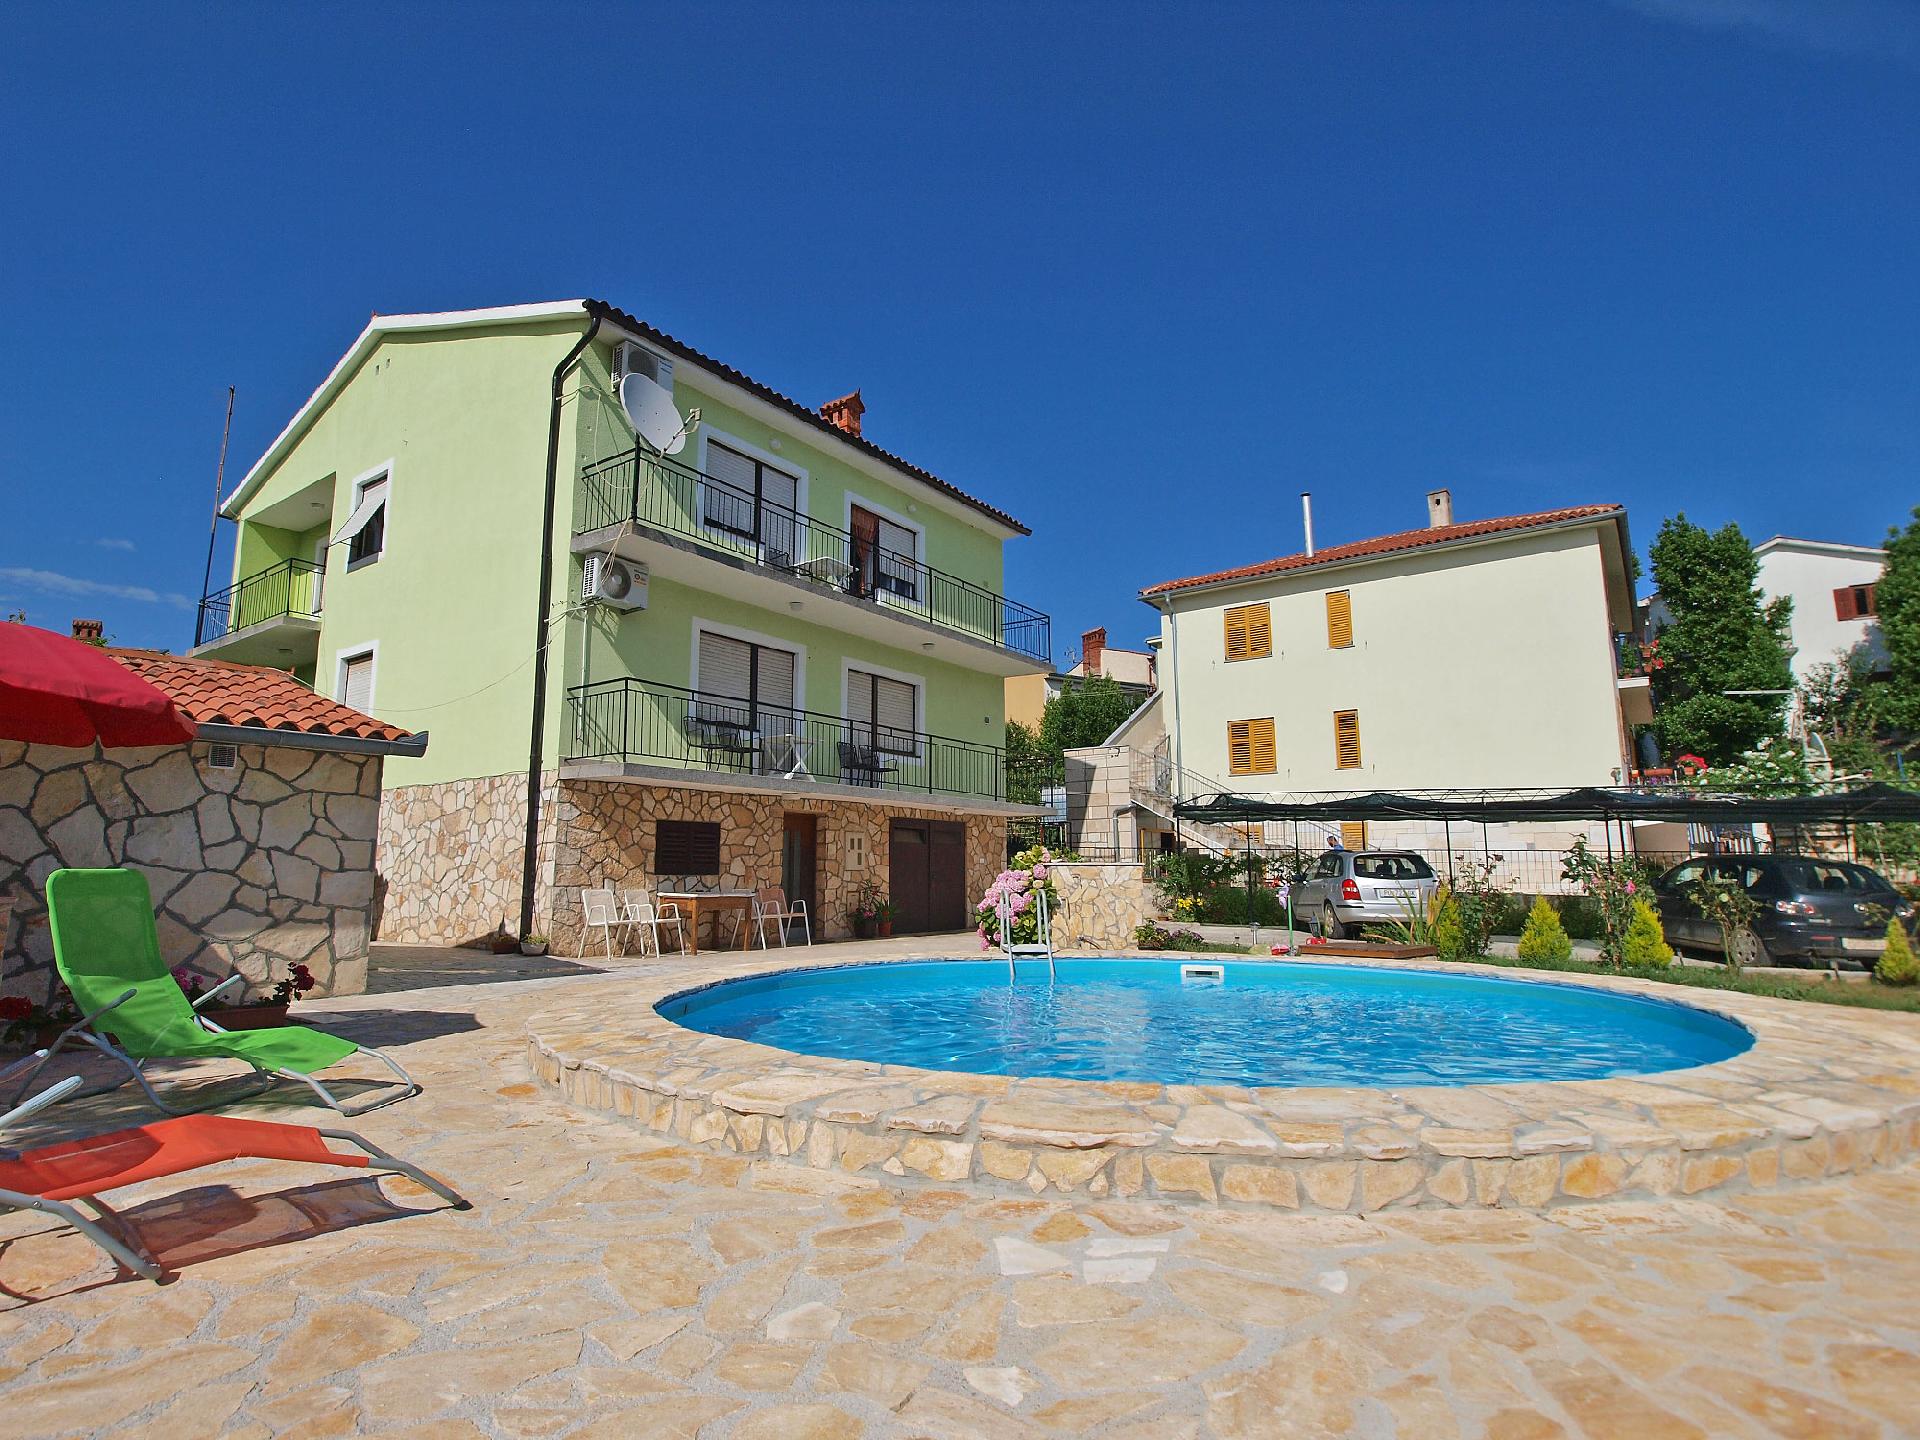 Ferienwohnung für 6 Personen ca. 90 m² i  in Kroatien